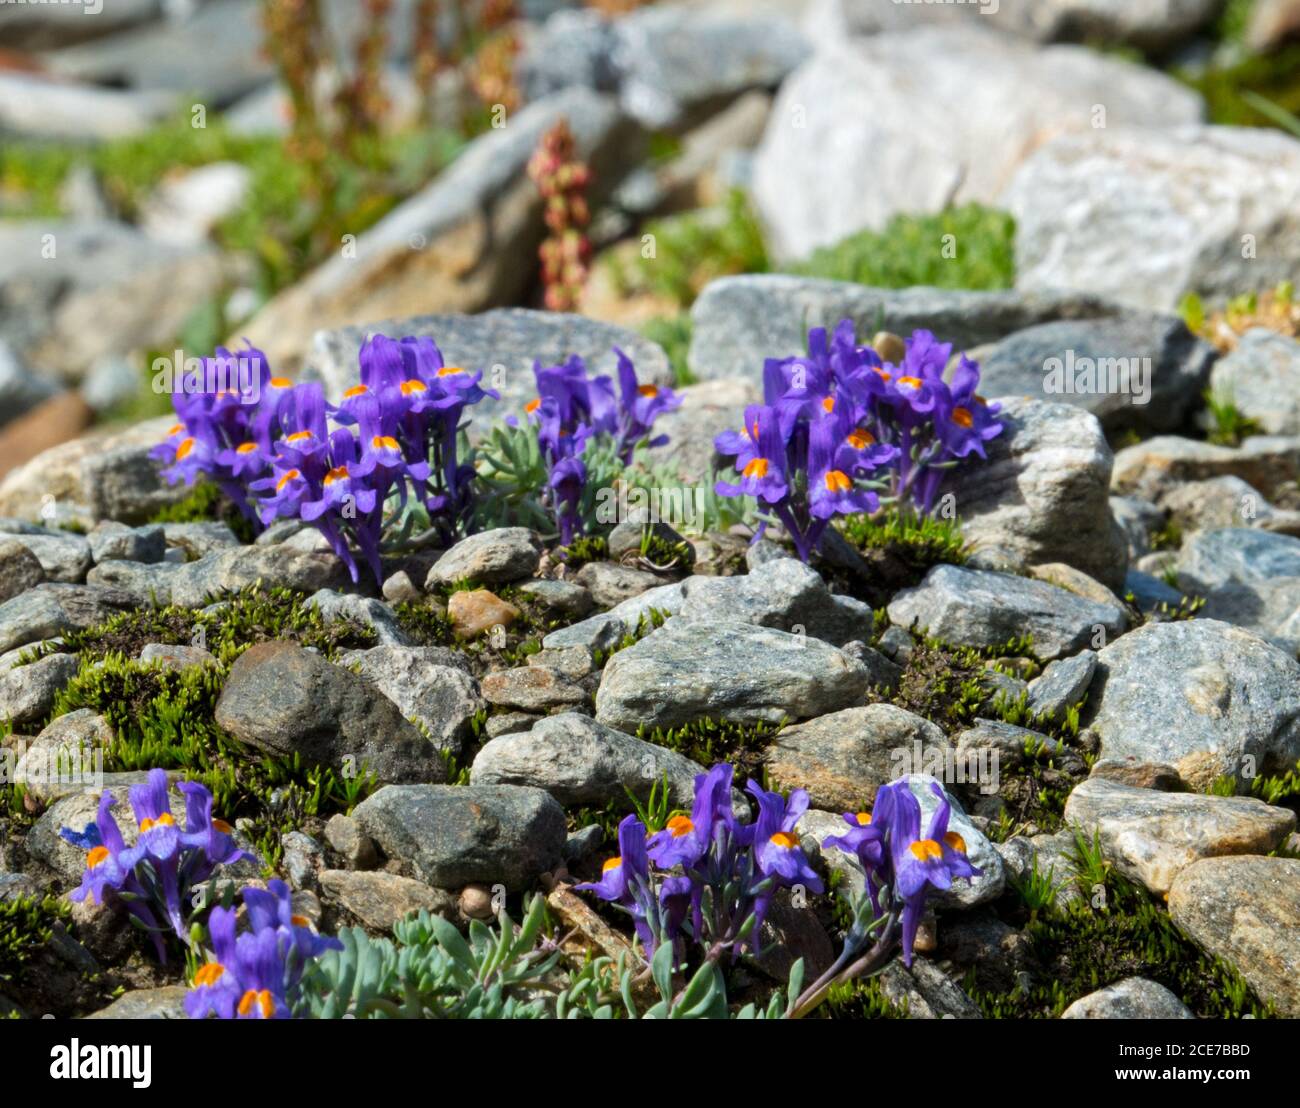 Toadlax alpin, Linaria alpina, fleurs violettes avec des lobes orange au centre , croissant dans son envrionment naturel et rocailleux Banque D'Images